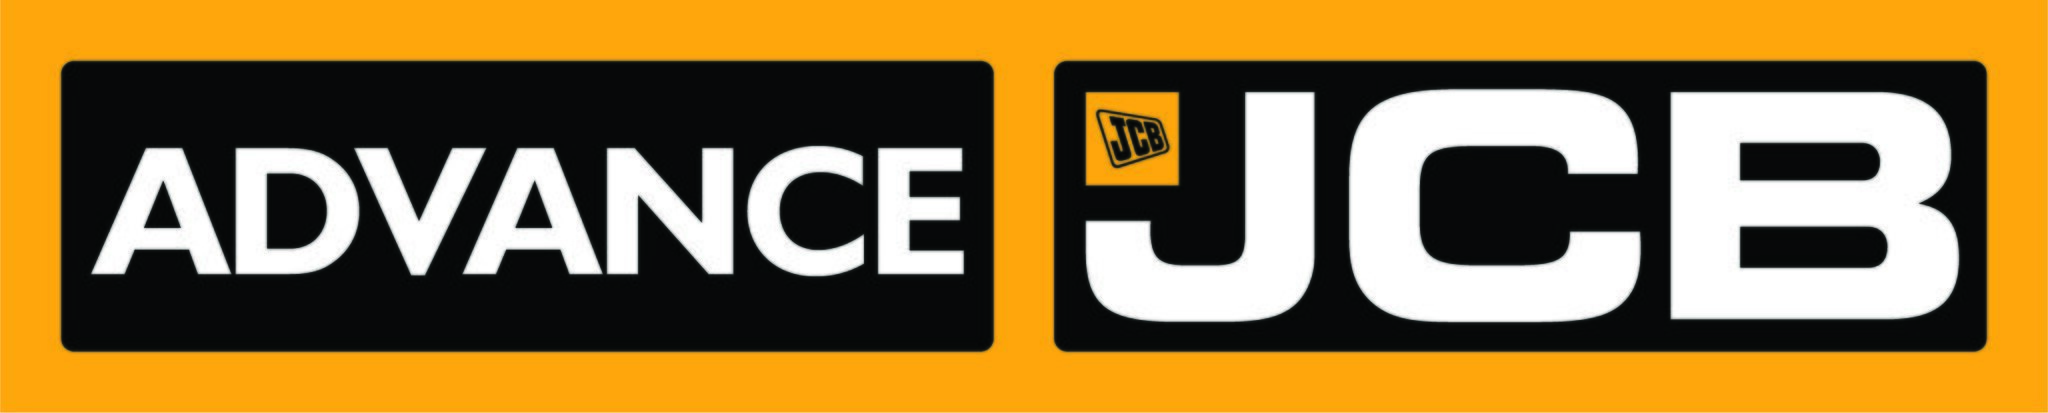 Logo Jcb 2